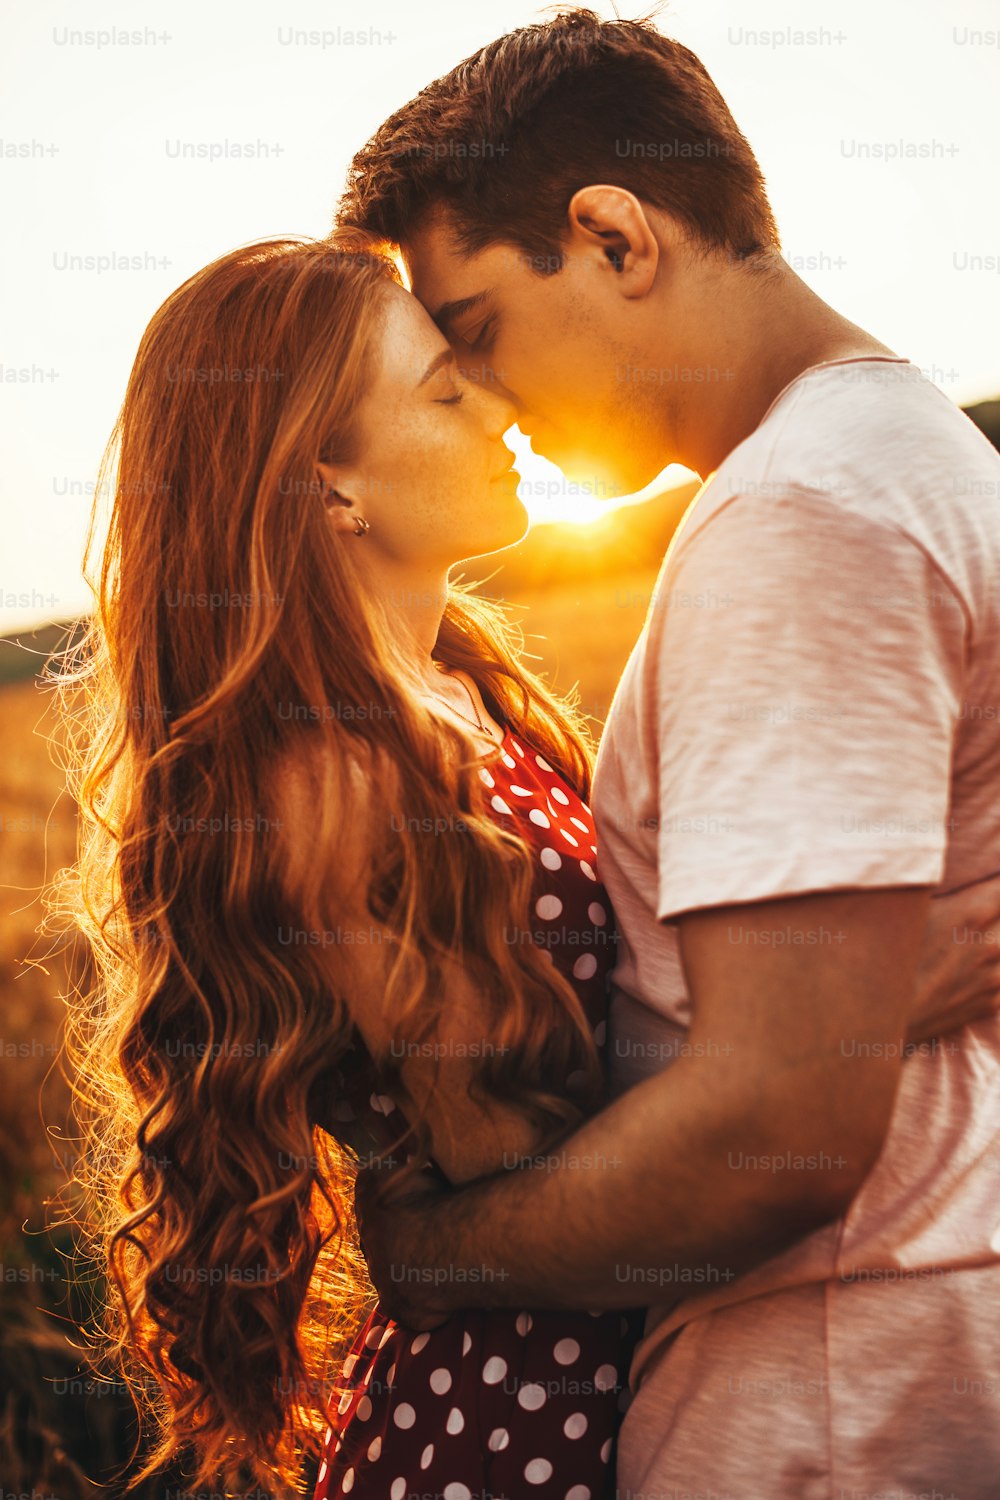 Vista lateral de una mujer con el pelo largo y rojo besando a su marido en una reunión al aire libre. Posando contra el fondo brillante